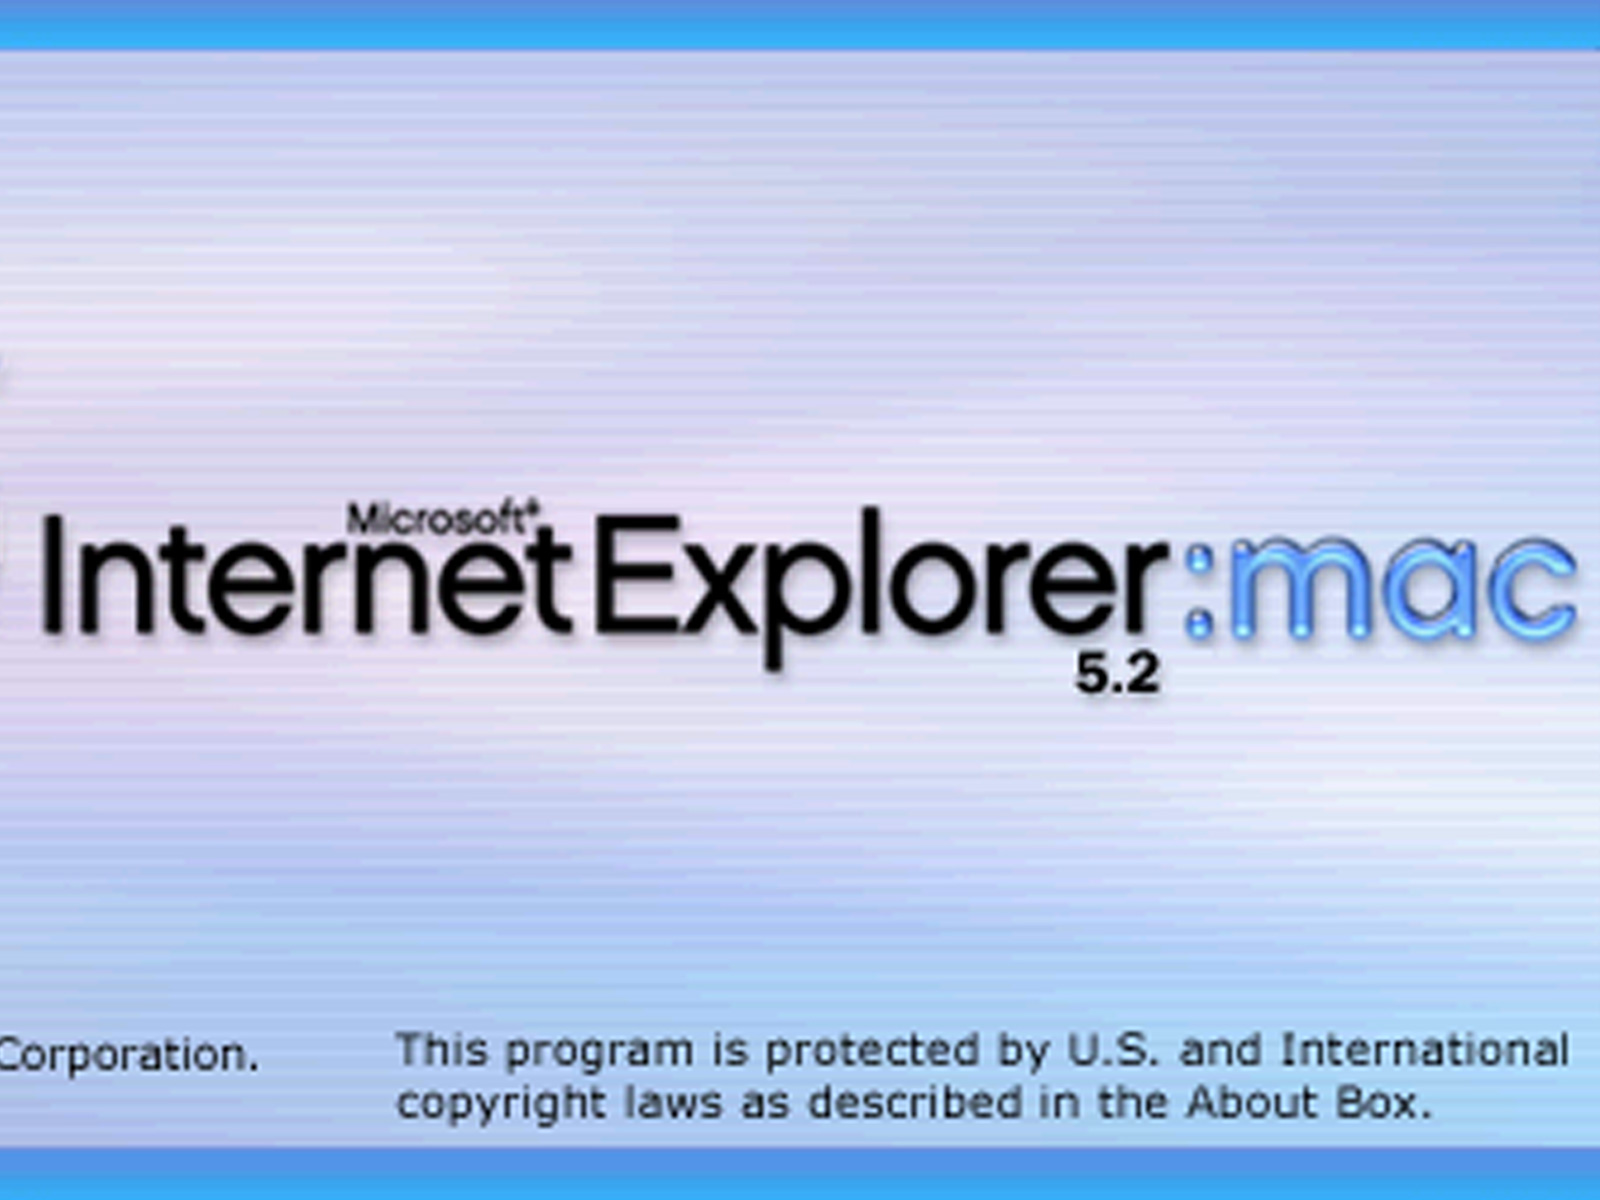 internet explorer for the mac os